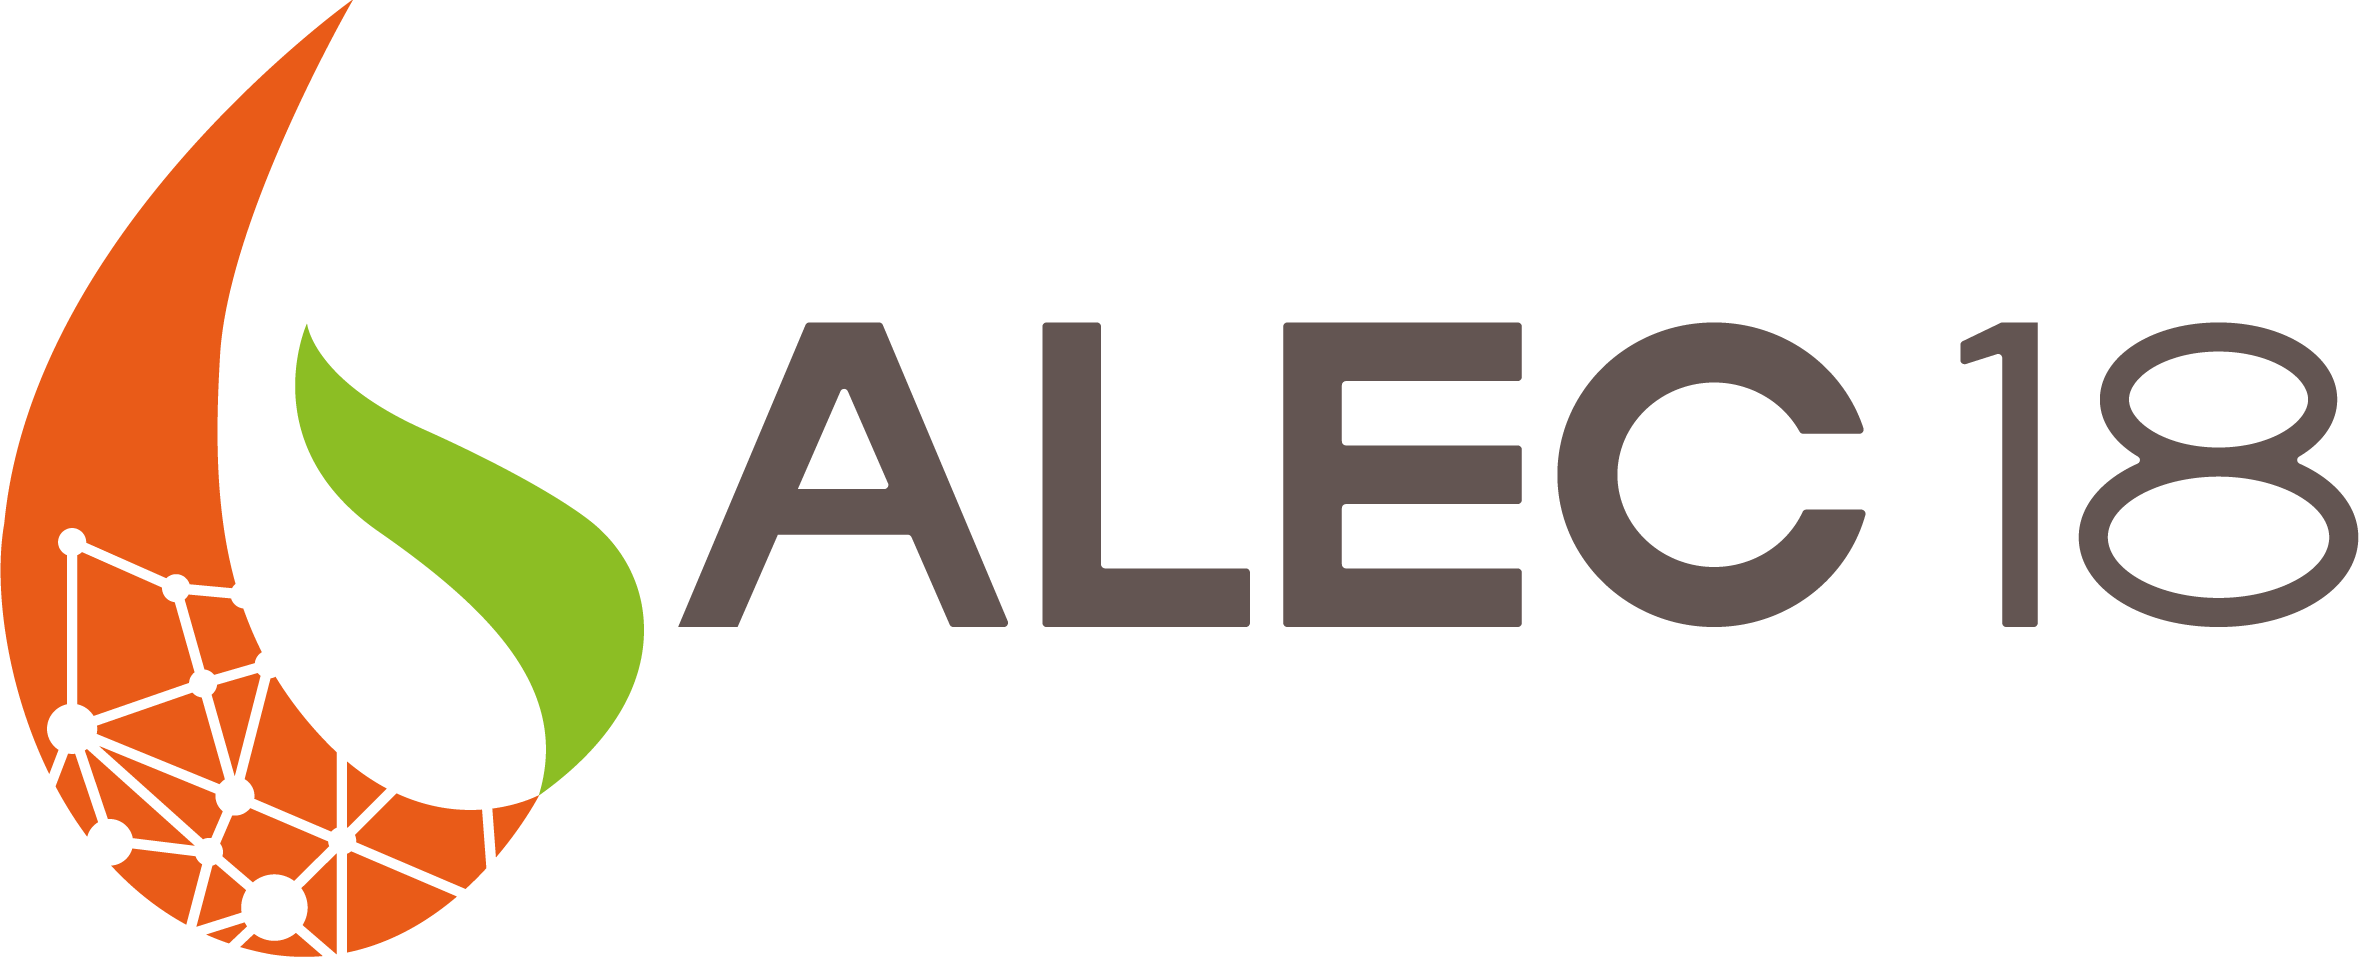 Logo de l'Alec 18 avec écrit à côté "ALEC18"